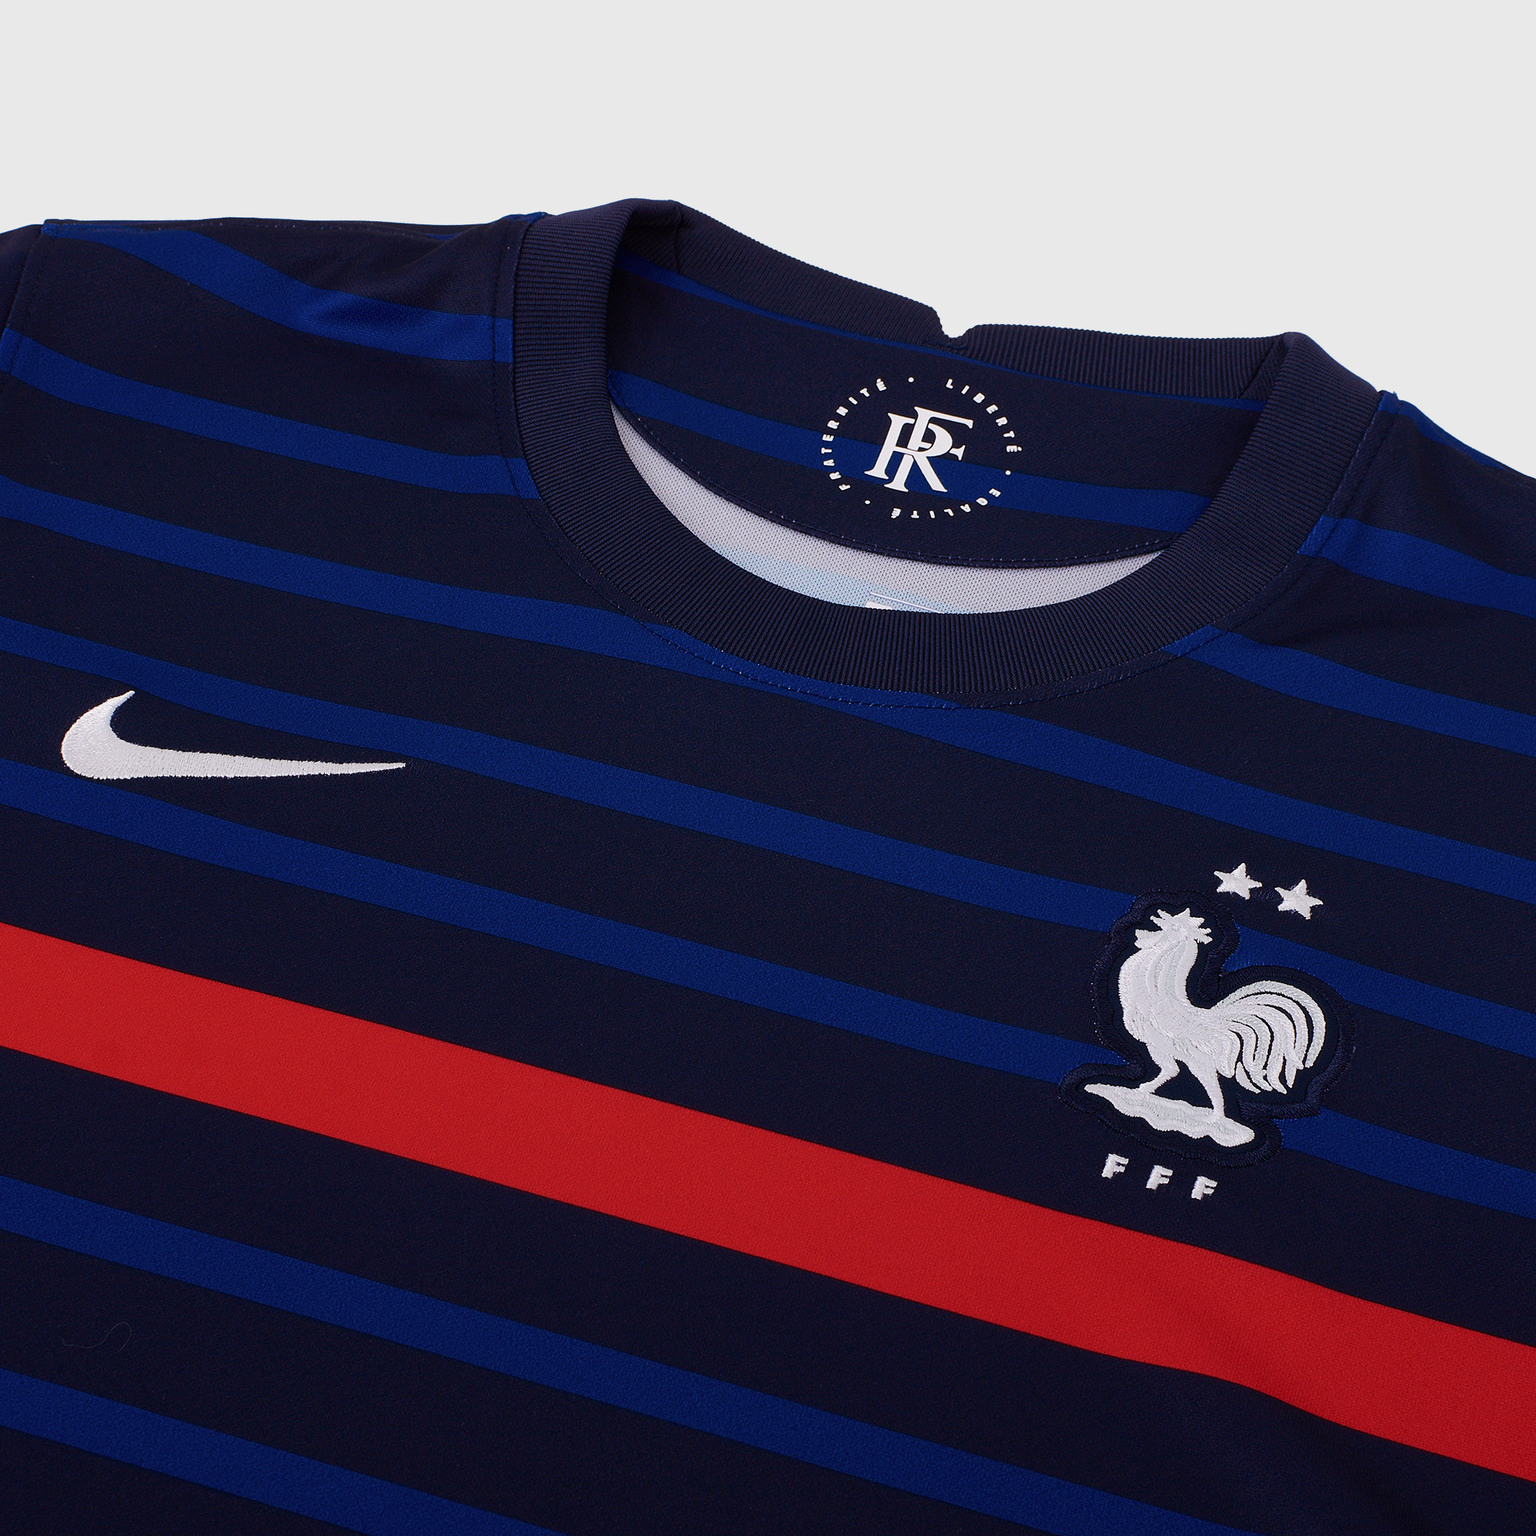 Футболка домашняя подростковая Nike сборной Франции сезон 2020/21